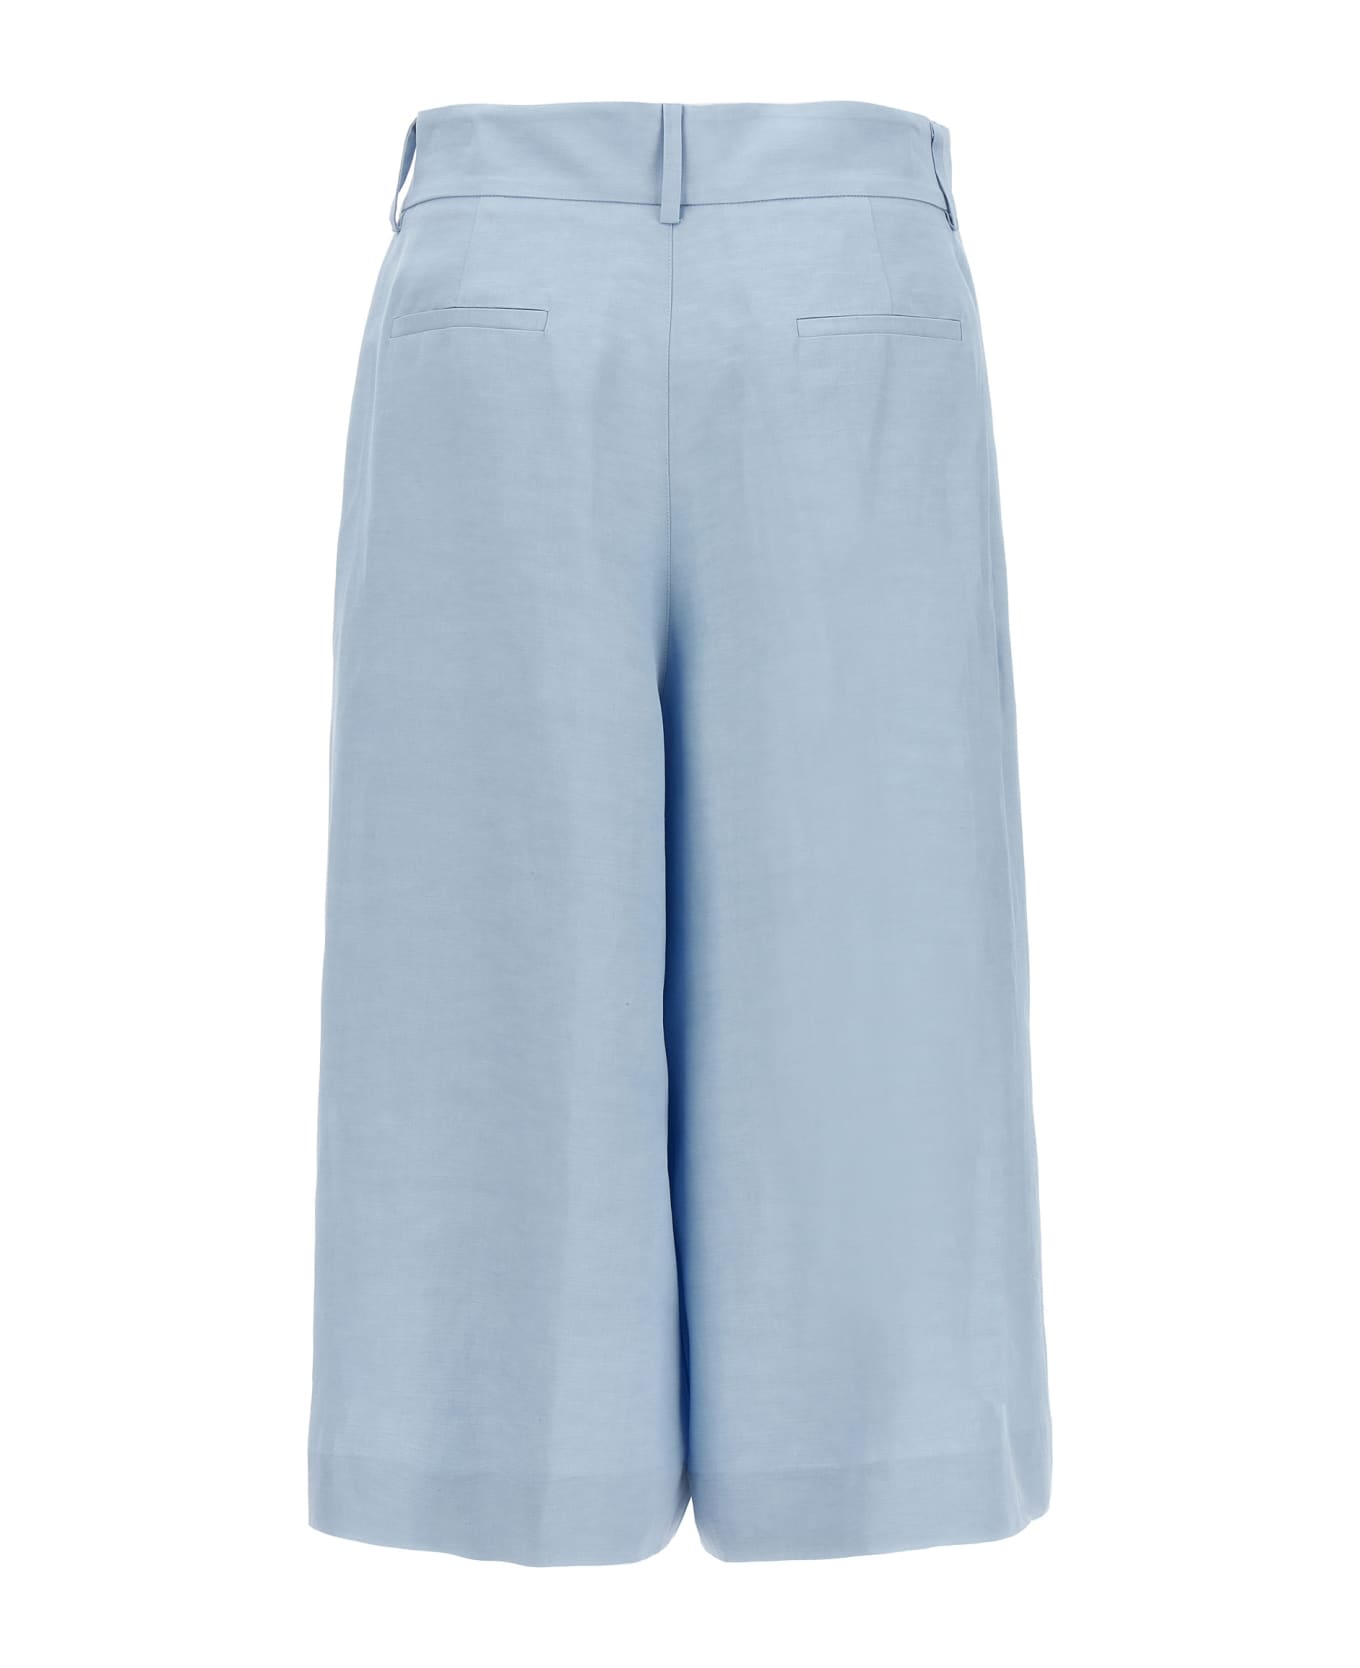 Parosh 'raisa' Bermuda Shorts - Light Blue